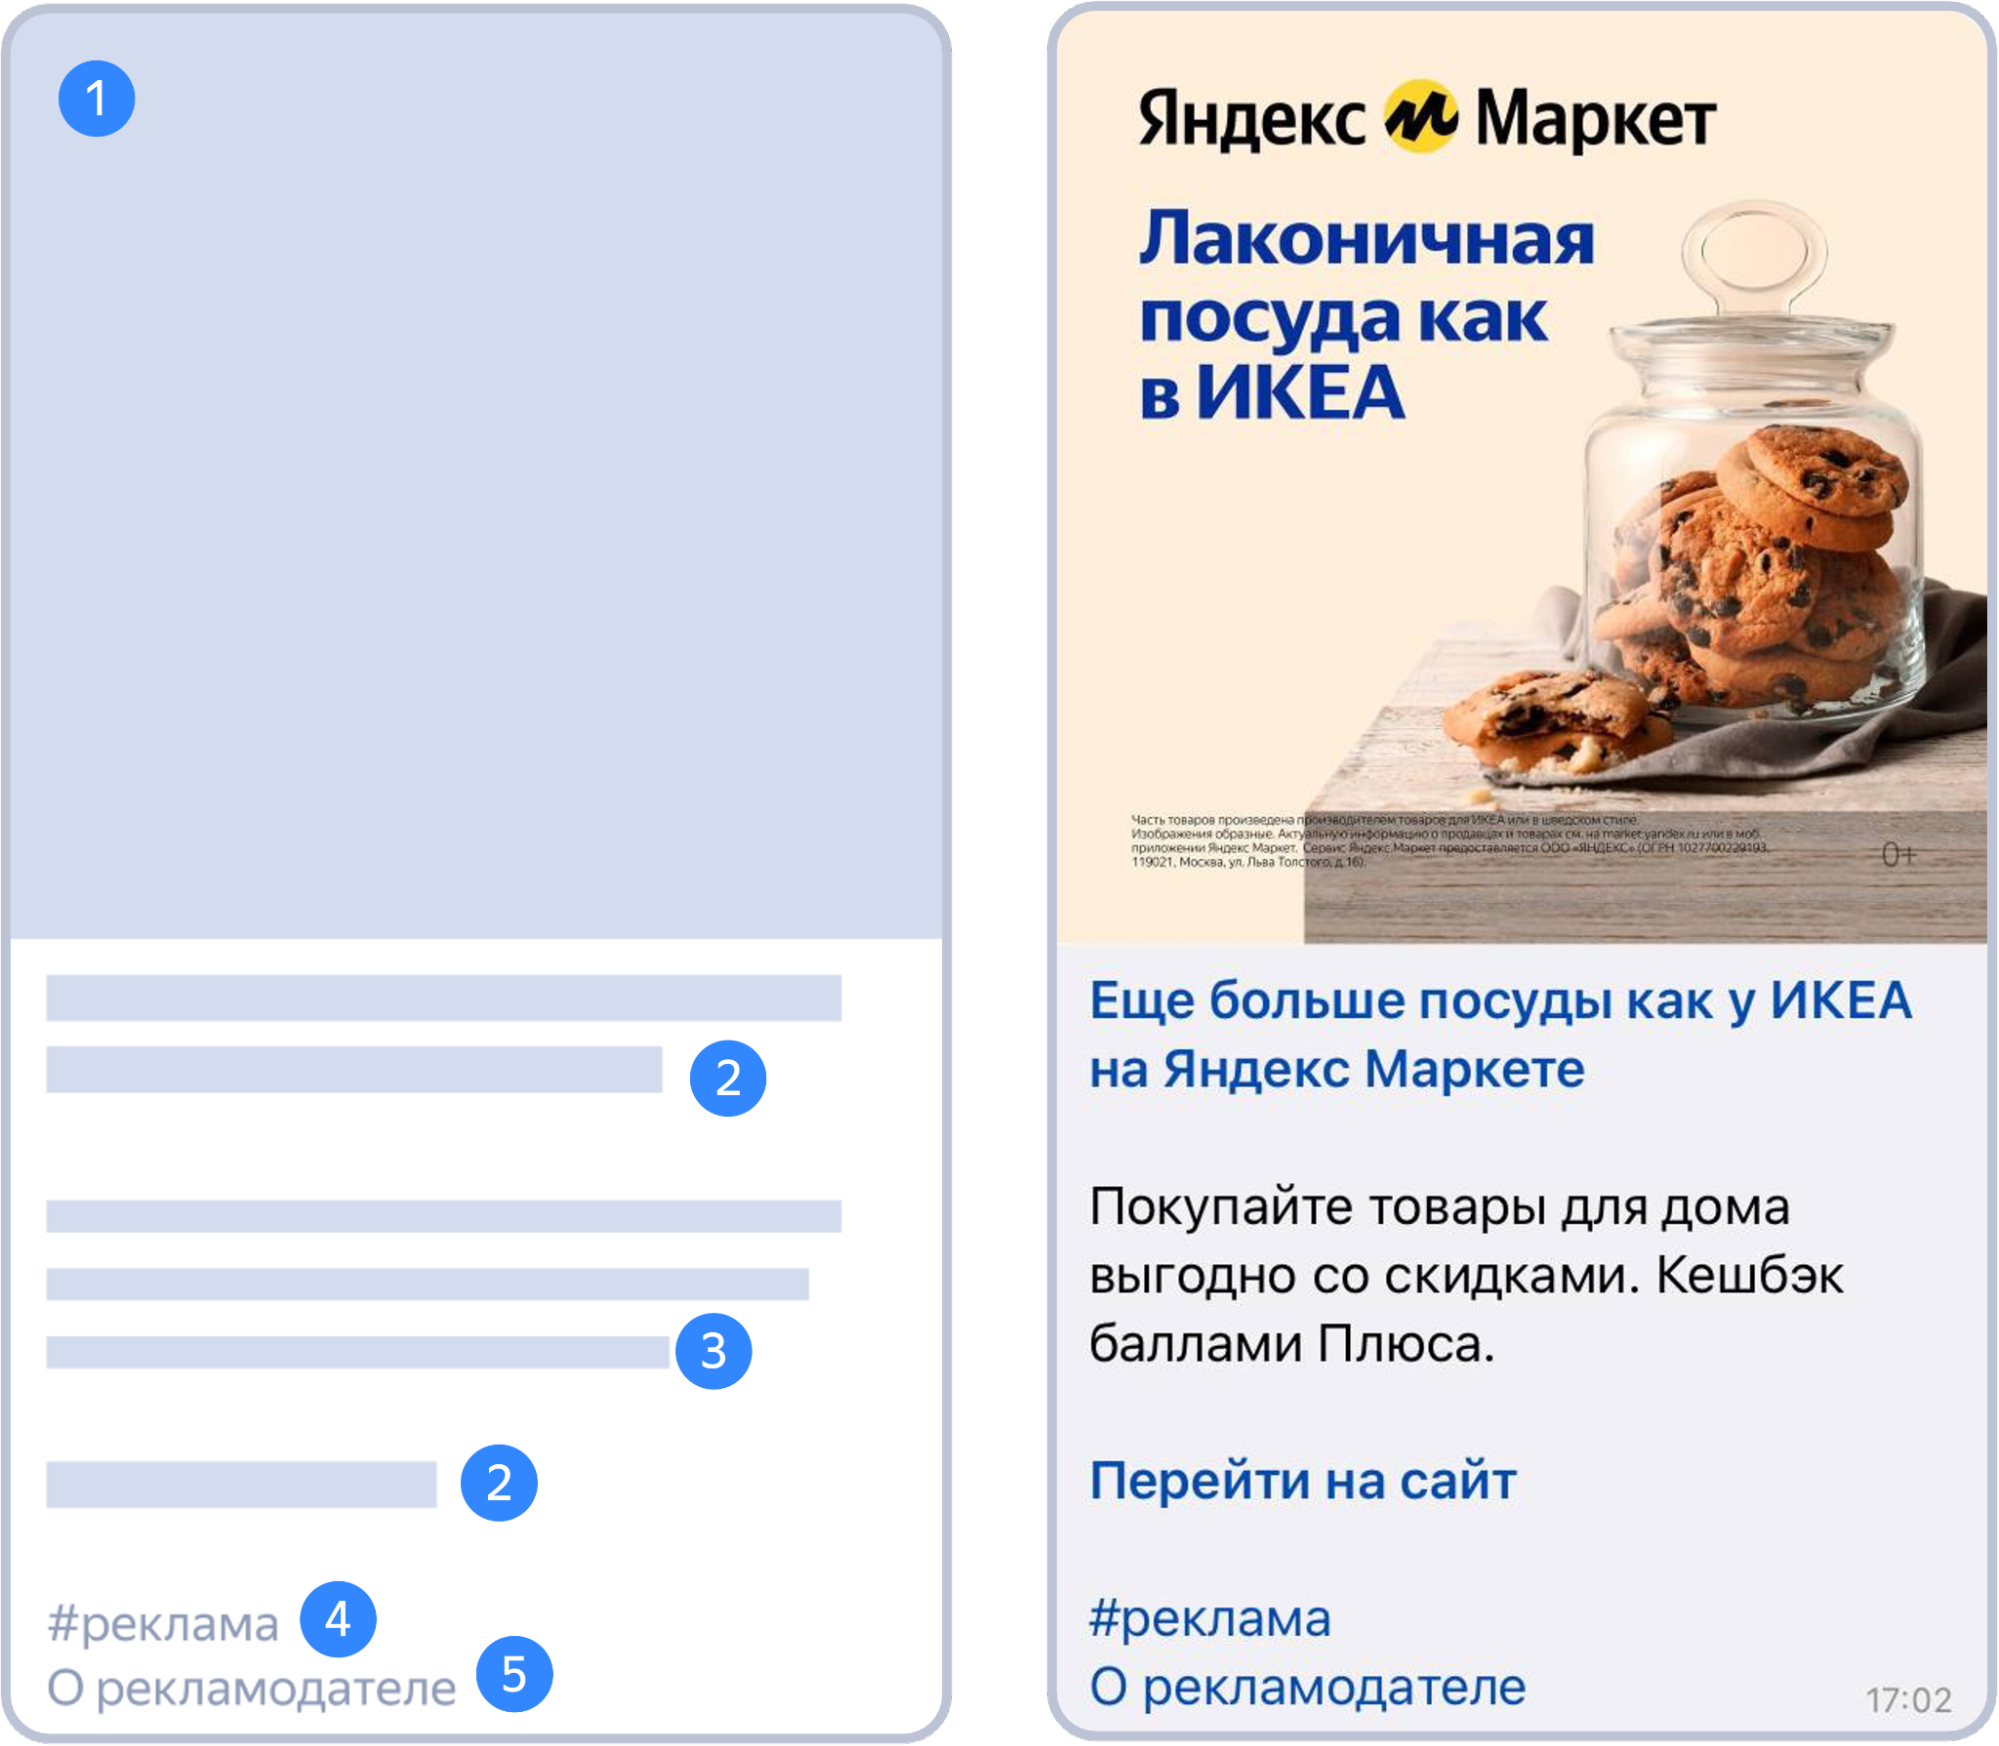 Виды рекламы в Telegram: какую рекламу запустить